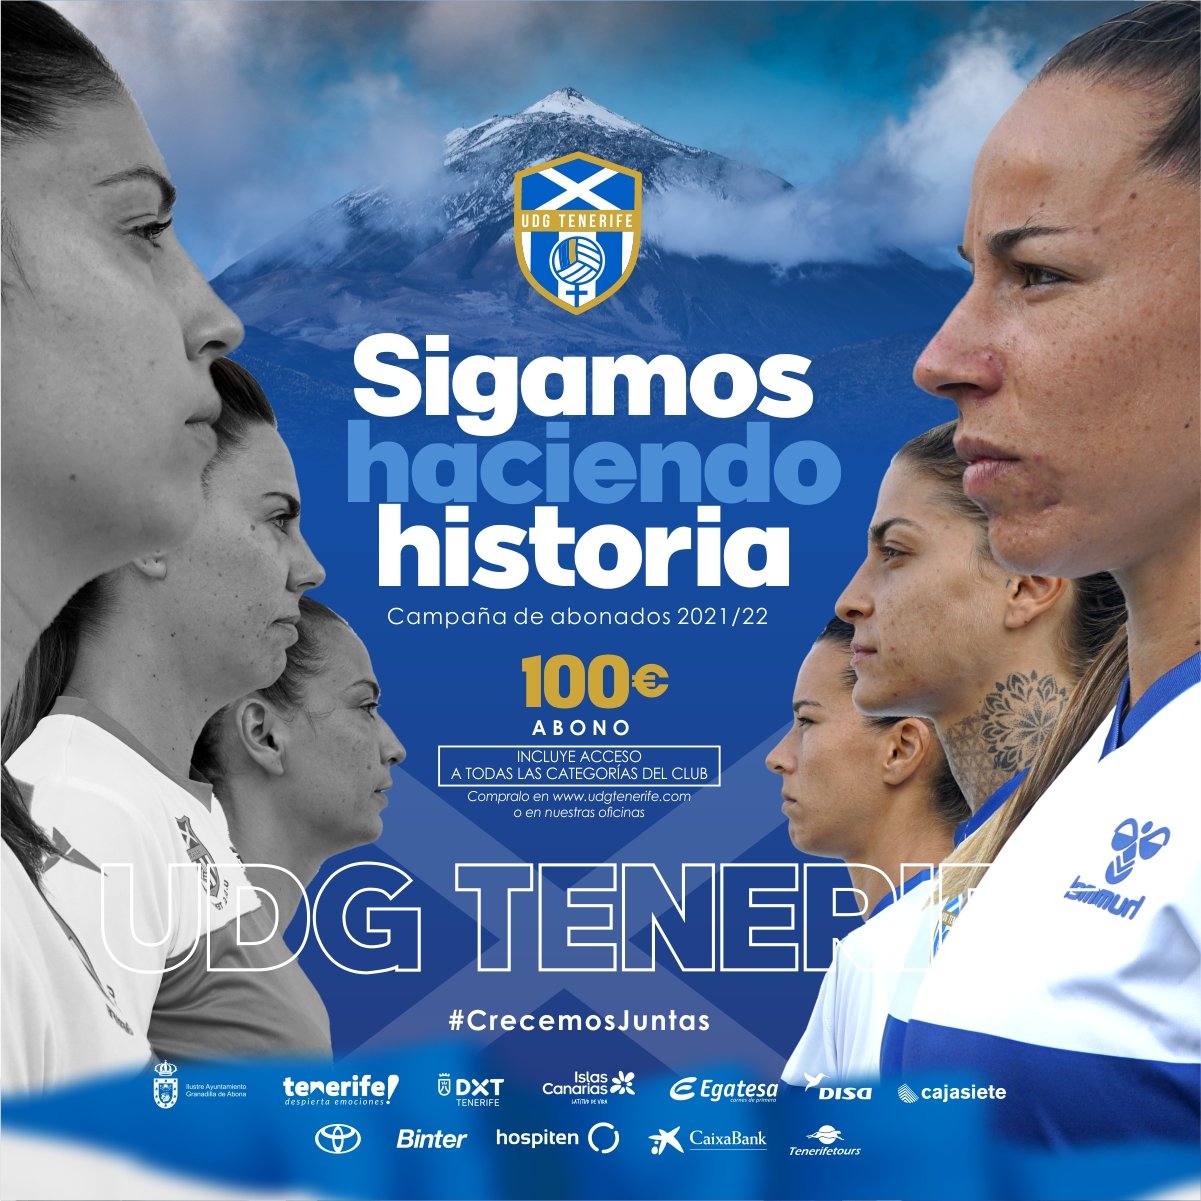 La UDG Tenerife presenta su campaña de abonos: "Sigamos haciendo historia"